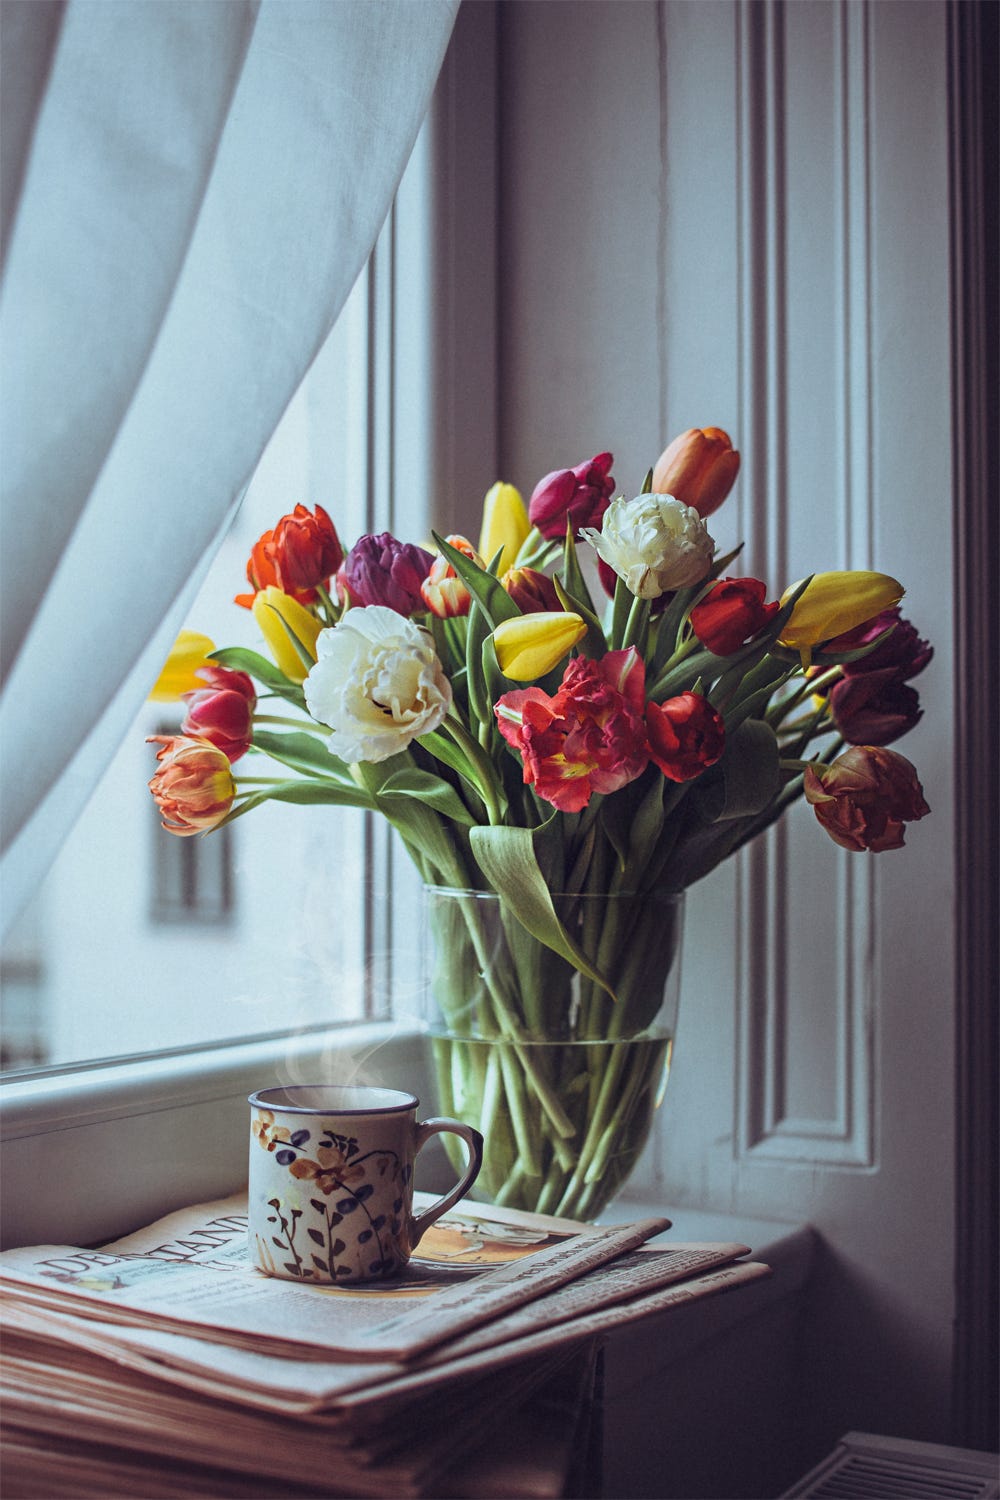 Фото Букет тюльпанов в вазе с водой и чашка горячего чая стоят у окна, фотограф Julia D&;vila-Lampe